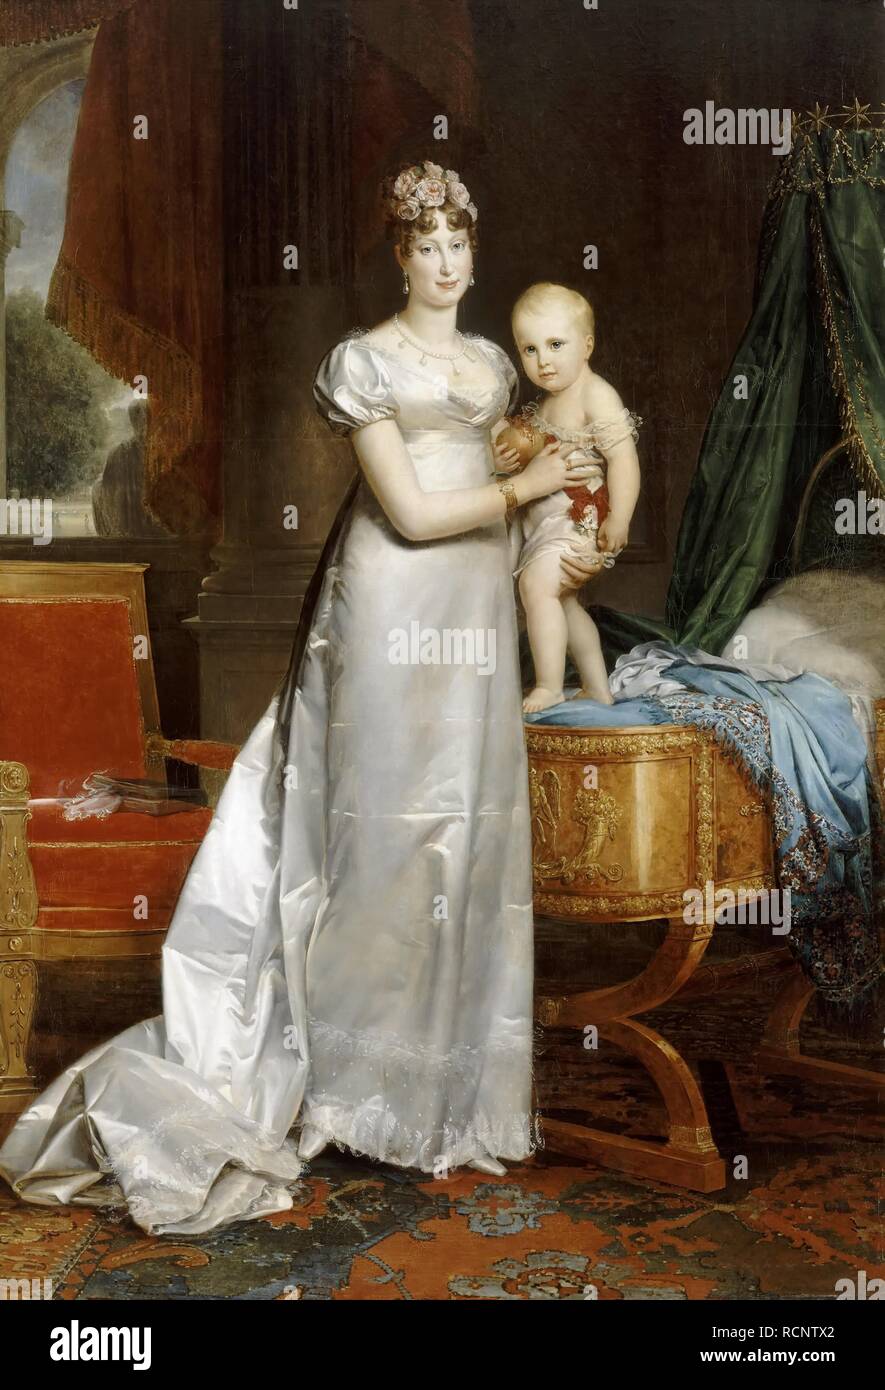 Empress Marie-Louise With the King of Rome. Museum: Musée de l'Histoire de France, Château de Versailles. Author: GERARD, FRANÇOIS. Stock Photo